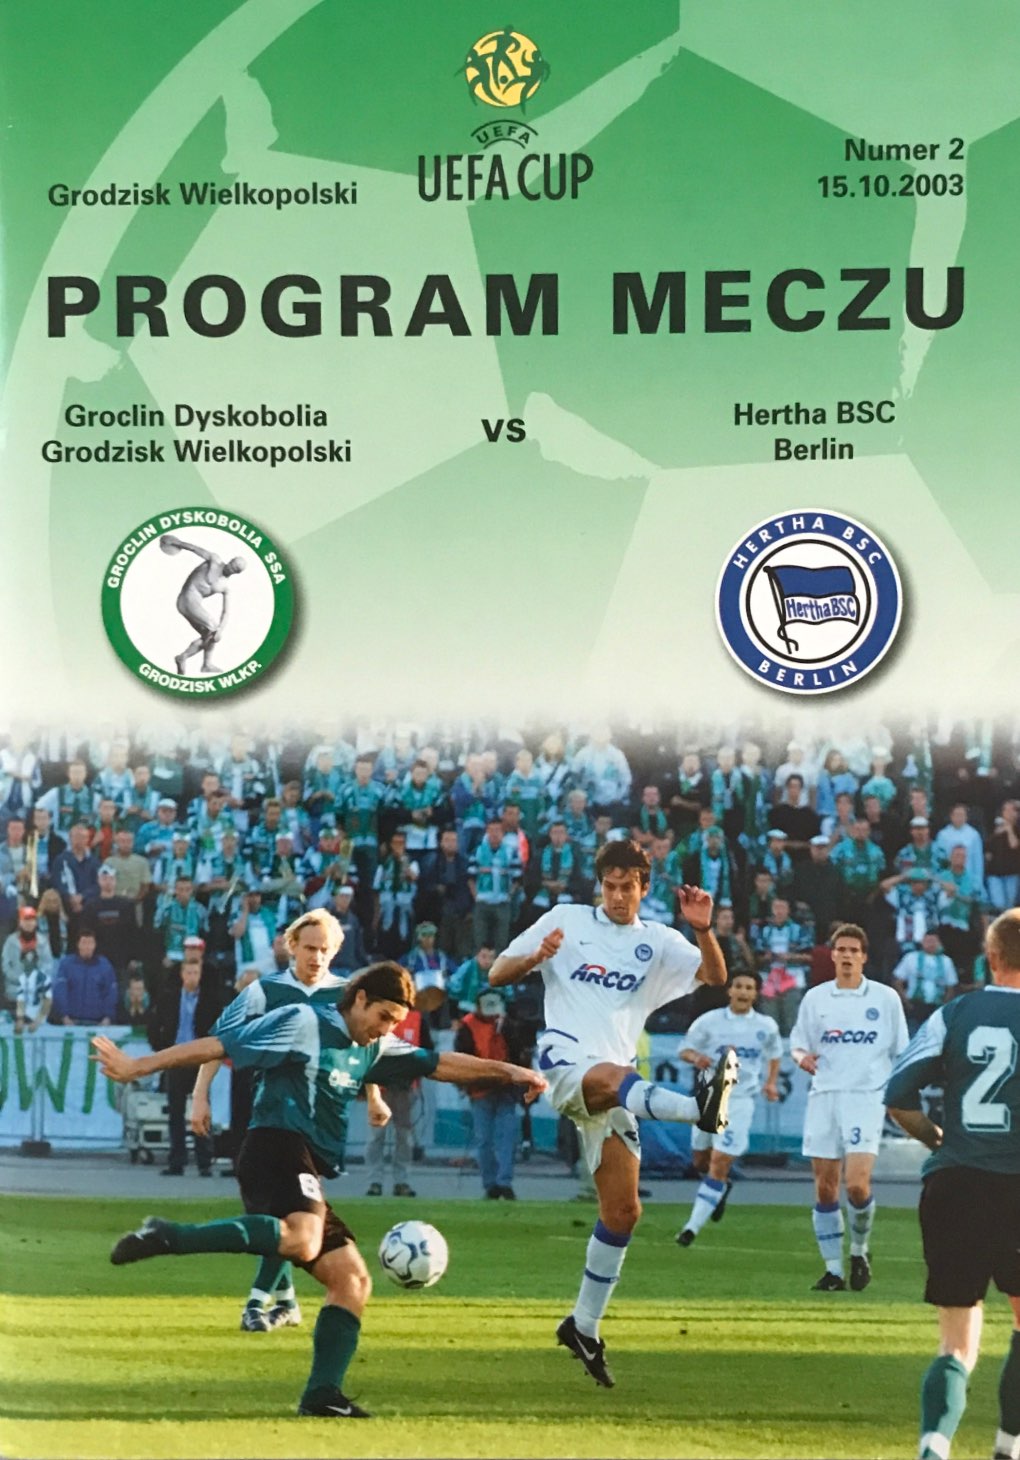 Program meczowy Groclin Dyskobolia - Hertha Berlin 1:0 (15.10.2003).